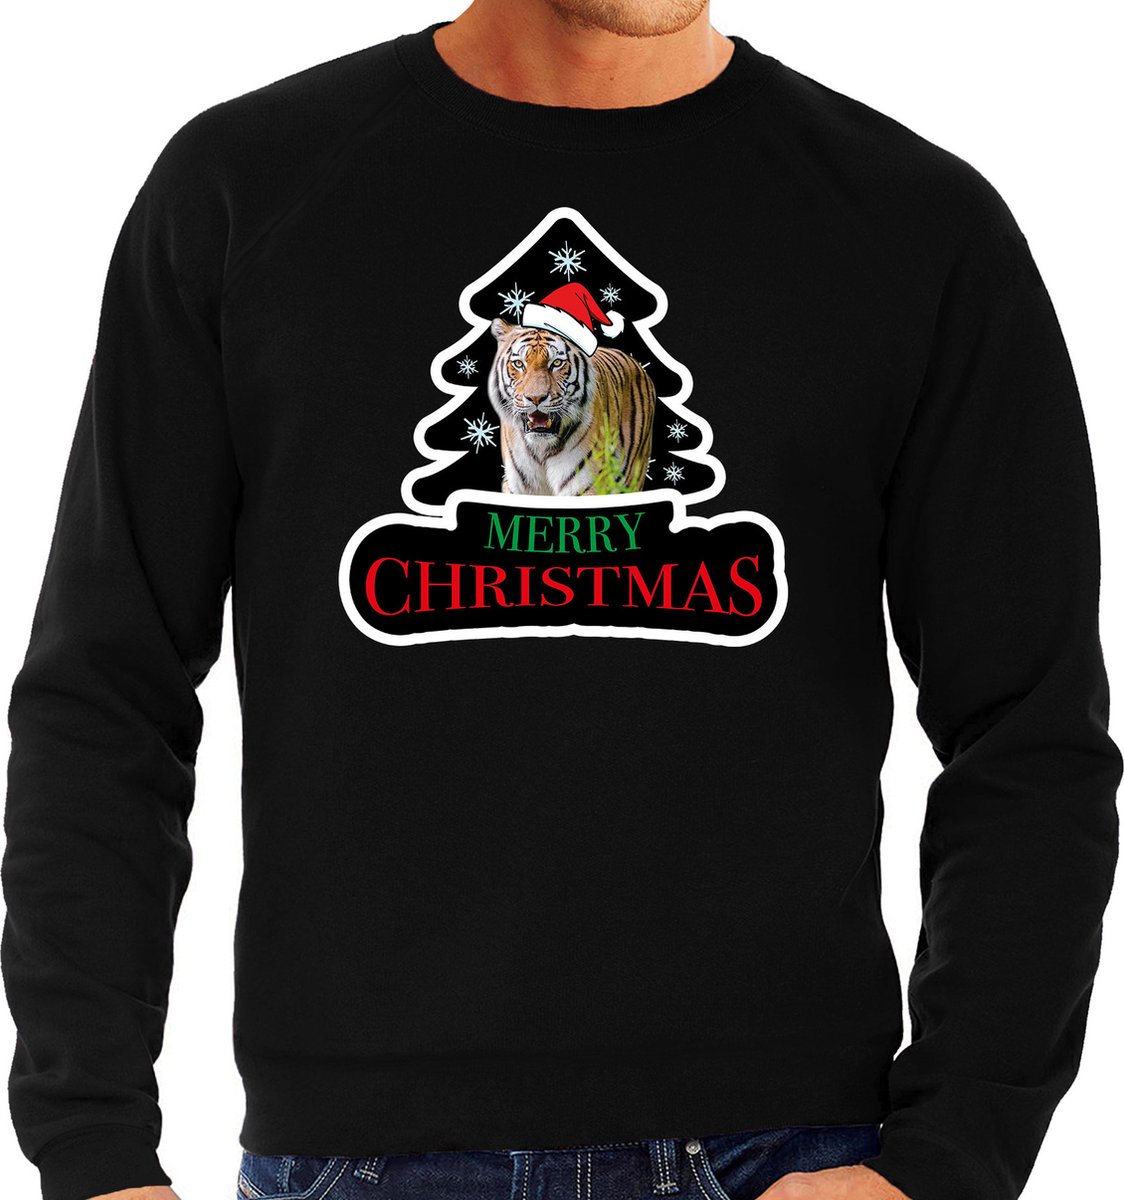 Dieren kersttrui tijger zwart heren - Foute tijgers kerstsweater - Kerst outfit dieren liefhebber L